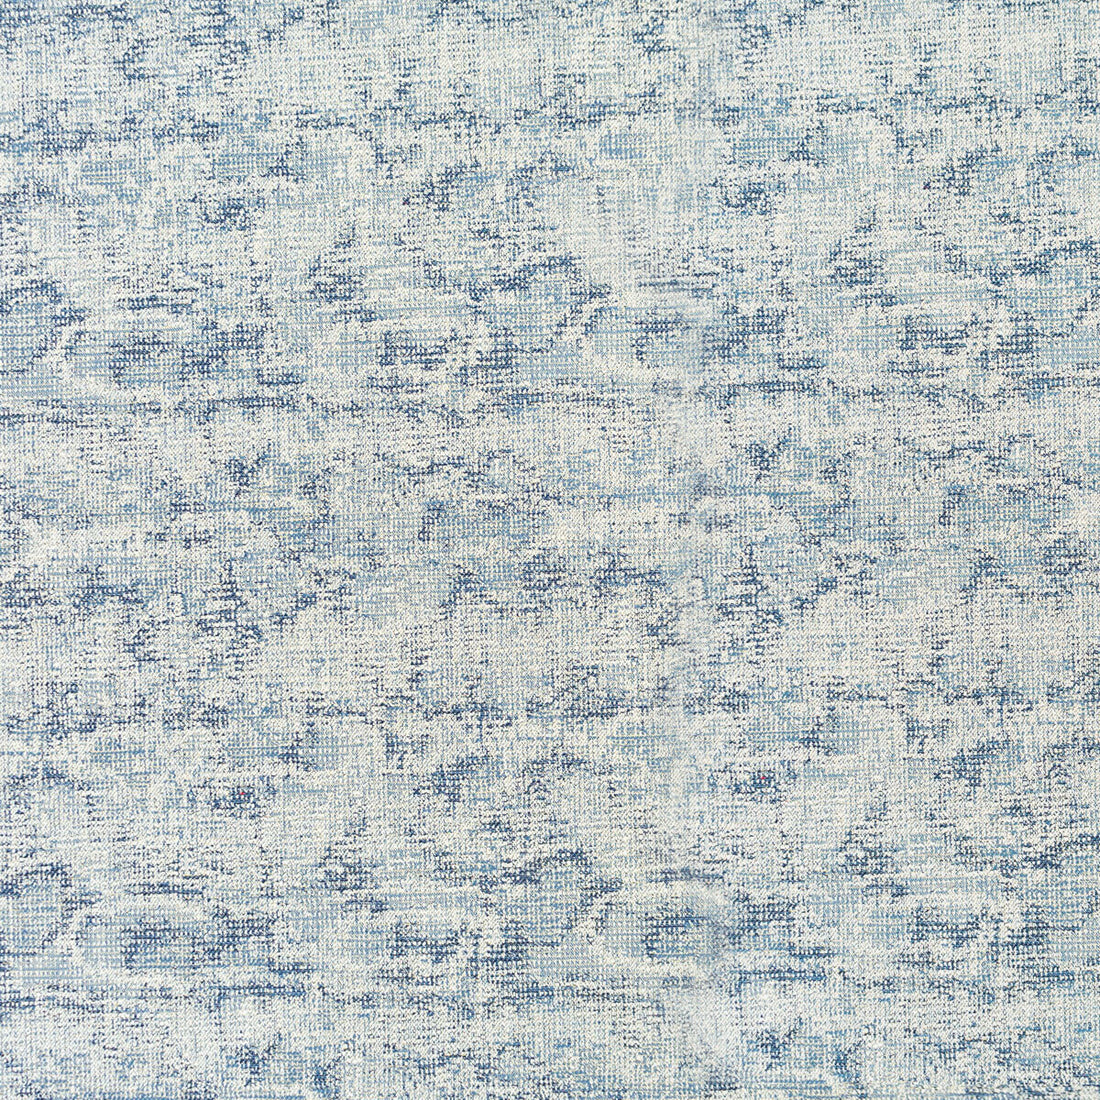 Carbonero fabric in azul color - pattern LCT1049.002.0 - by Gaston y Daniela in the Lorenzo Castillo VI collection